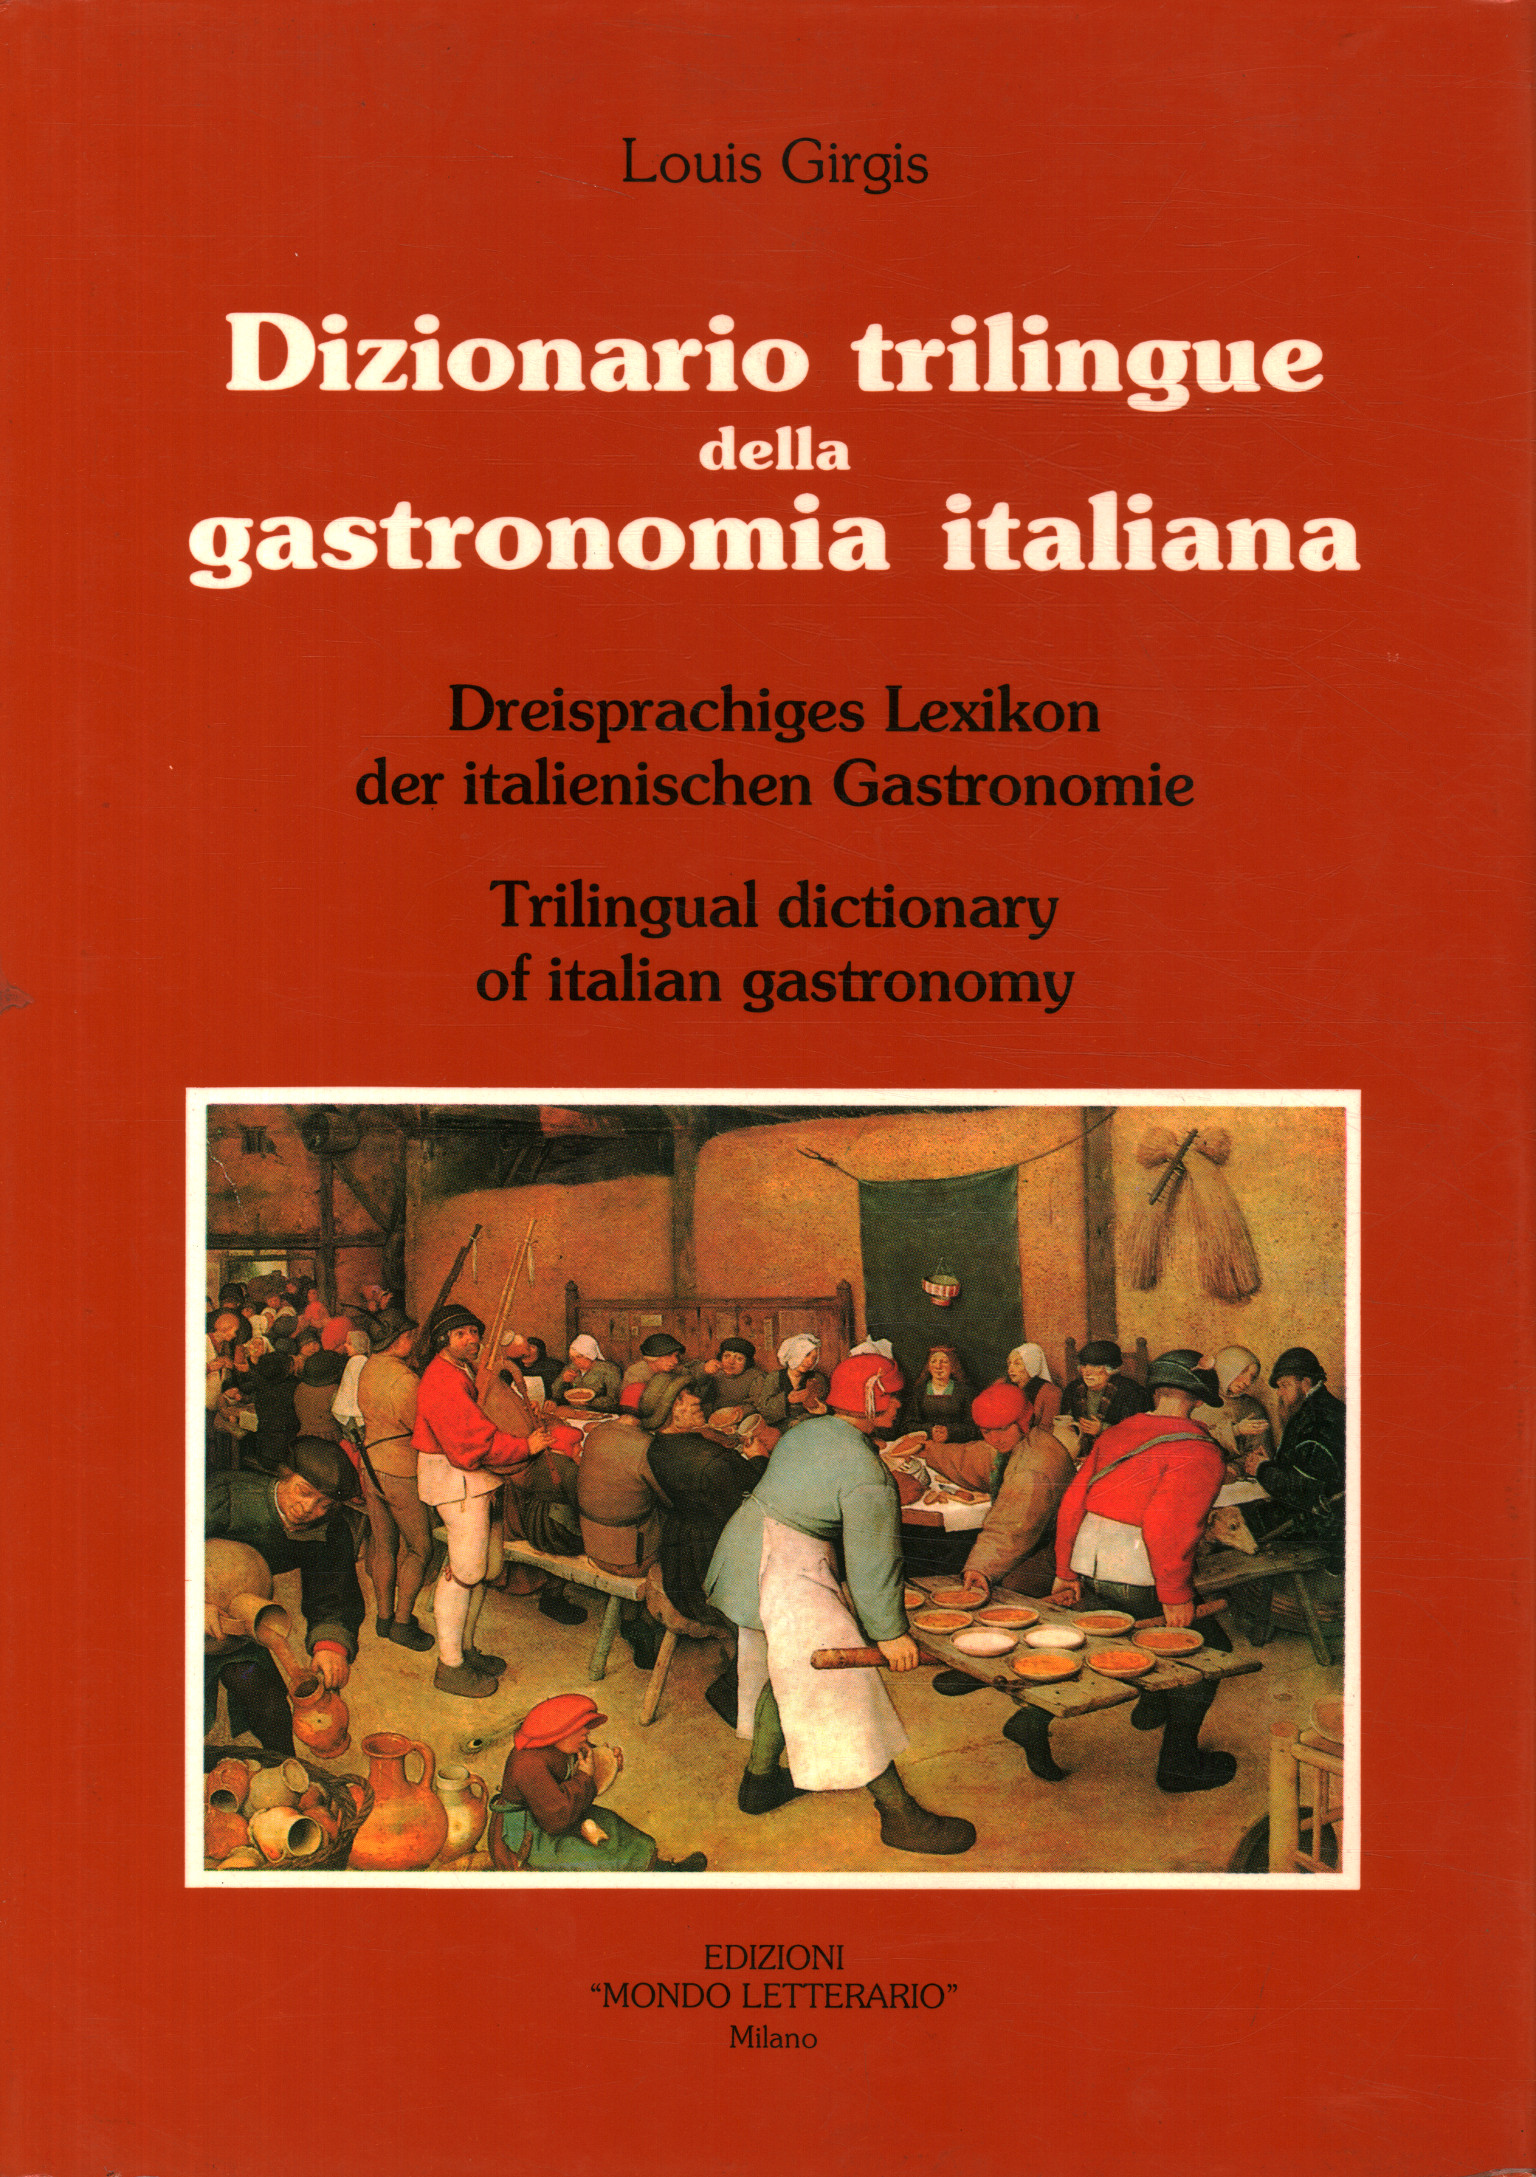 Diccionario trilingüe de gastronomía italiana